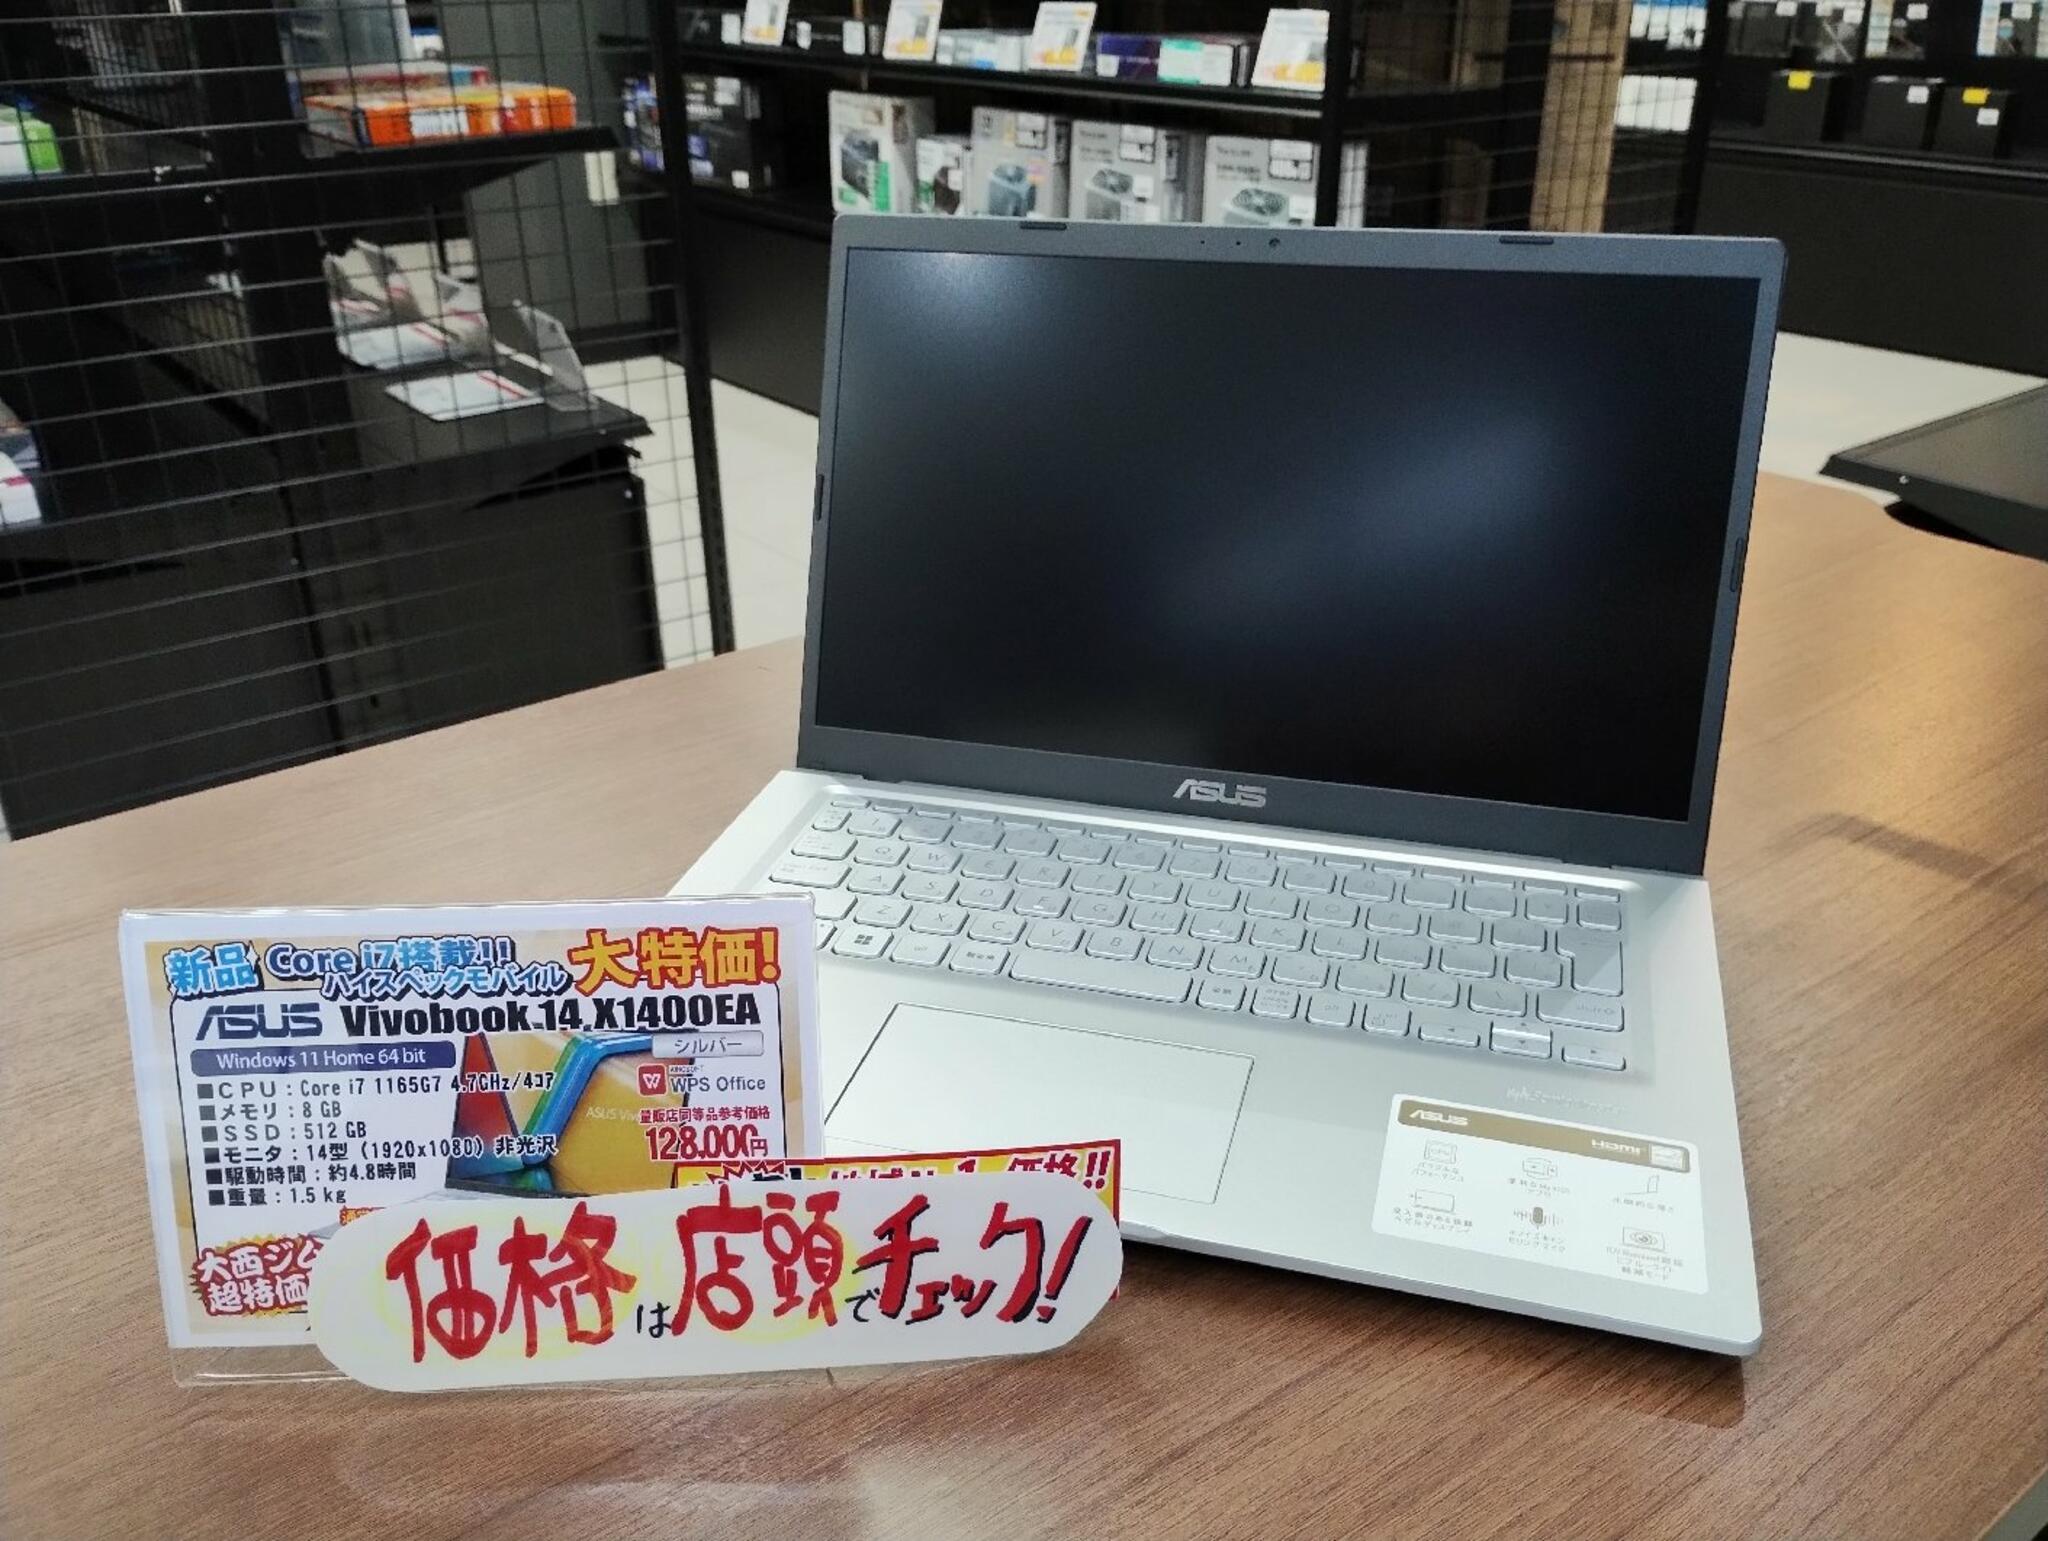 パソコン専門店 大西ジム 新長田店からのお知らせ(Core i7搭載モバイルノートＰＣ「VivoBook14 X1400EA」)に関する写真